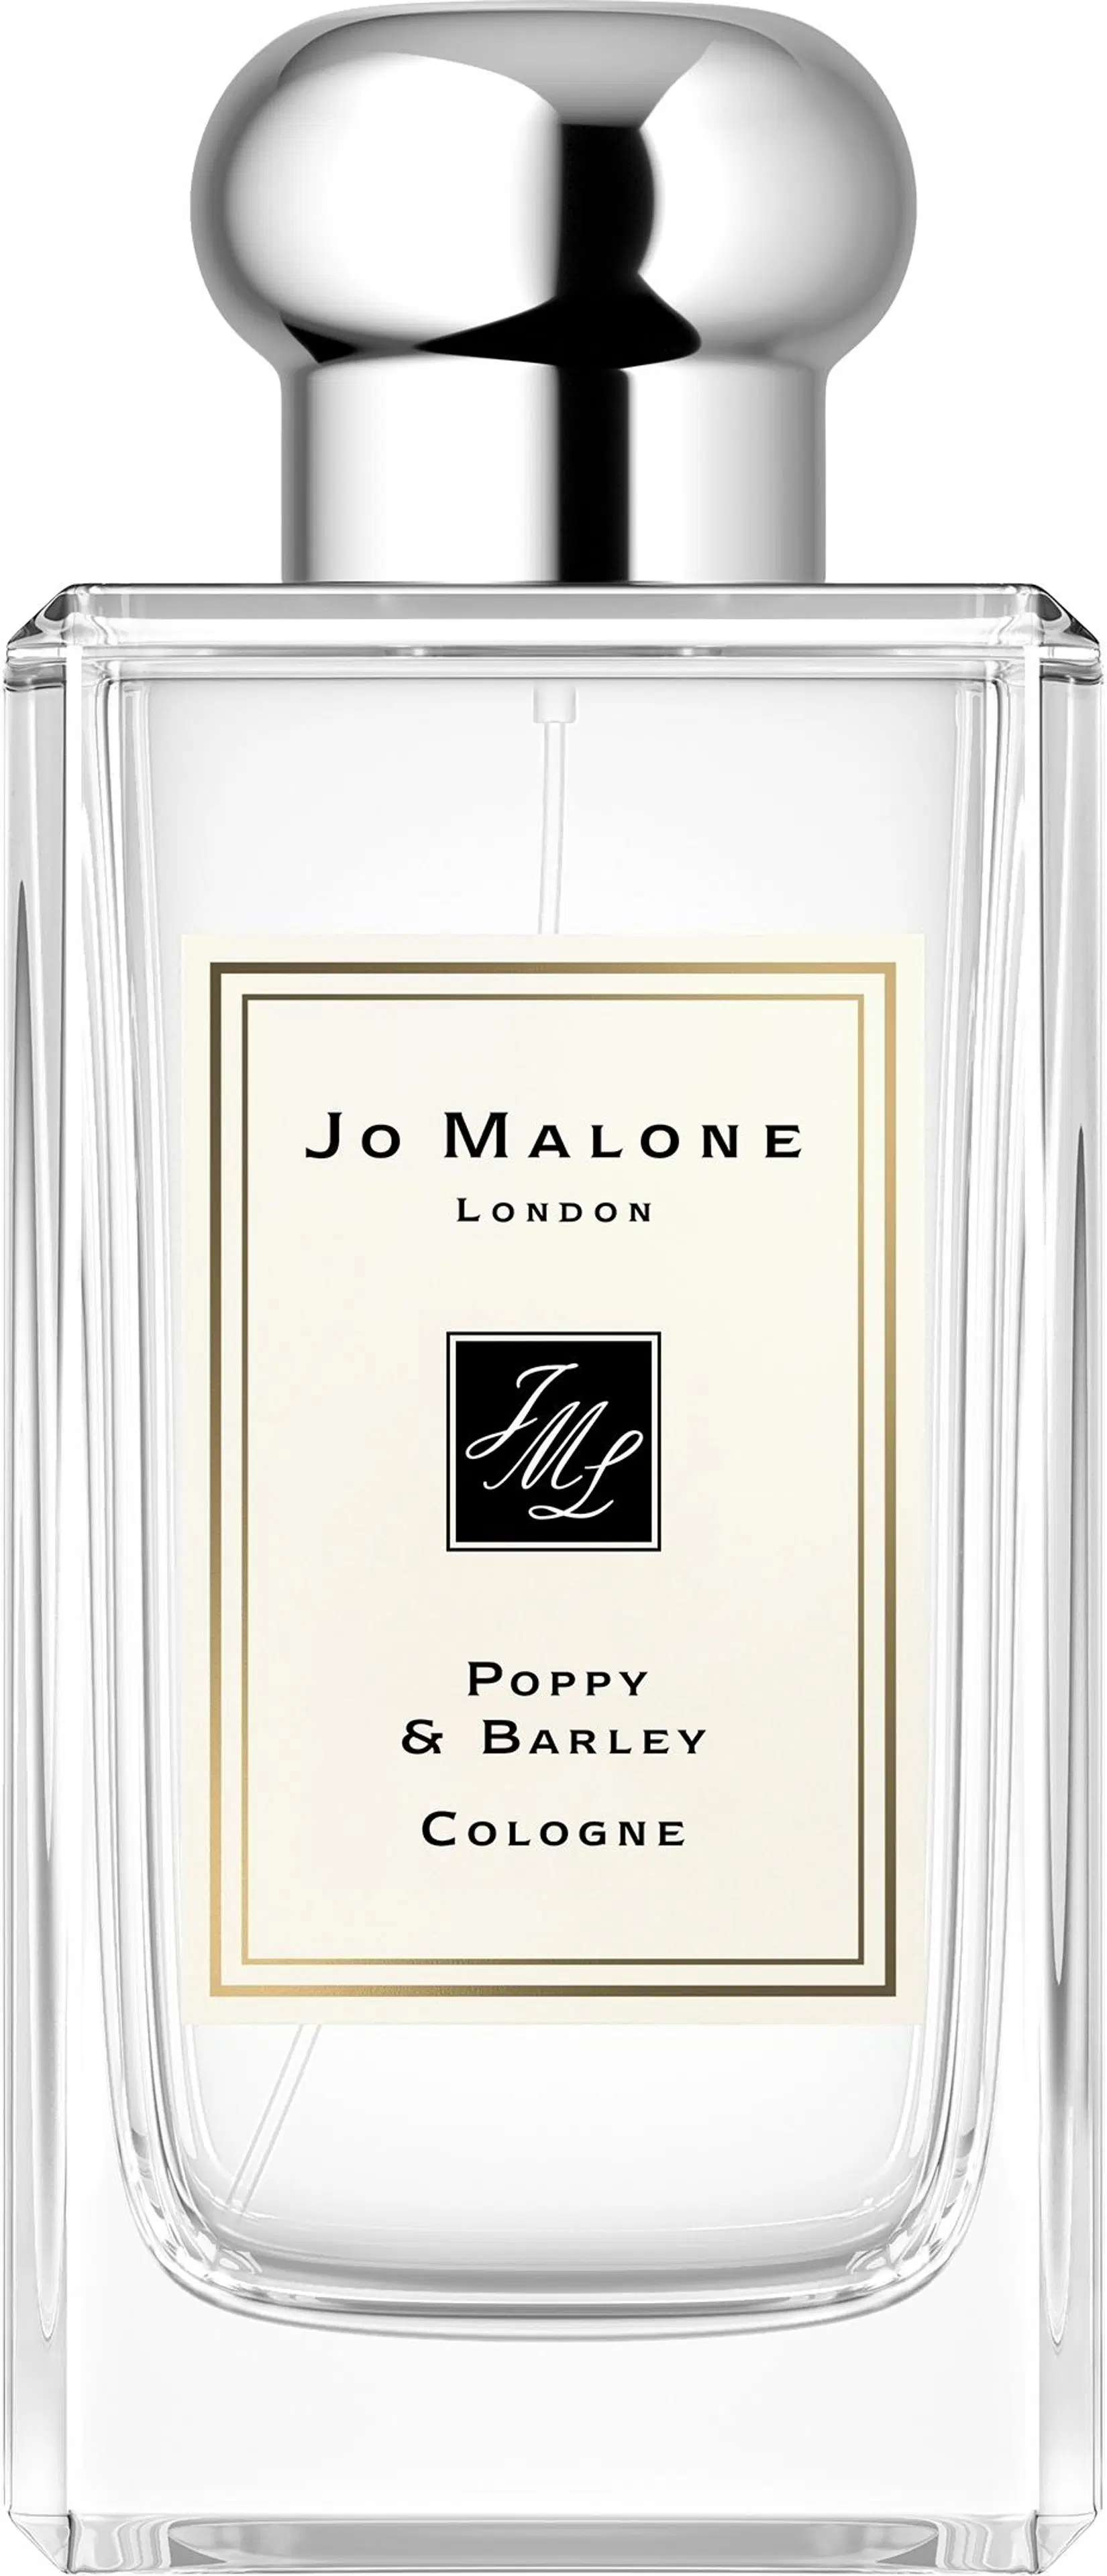 Jo Malone London Poppy & Barley Cologne EdT tuoksu 100ml